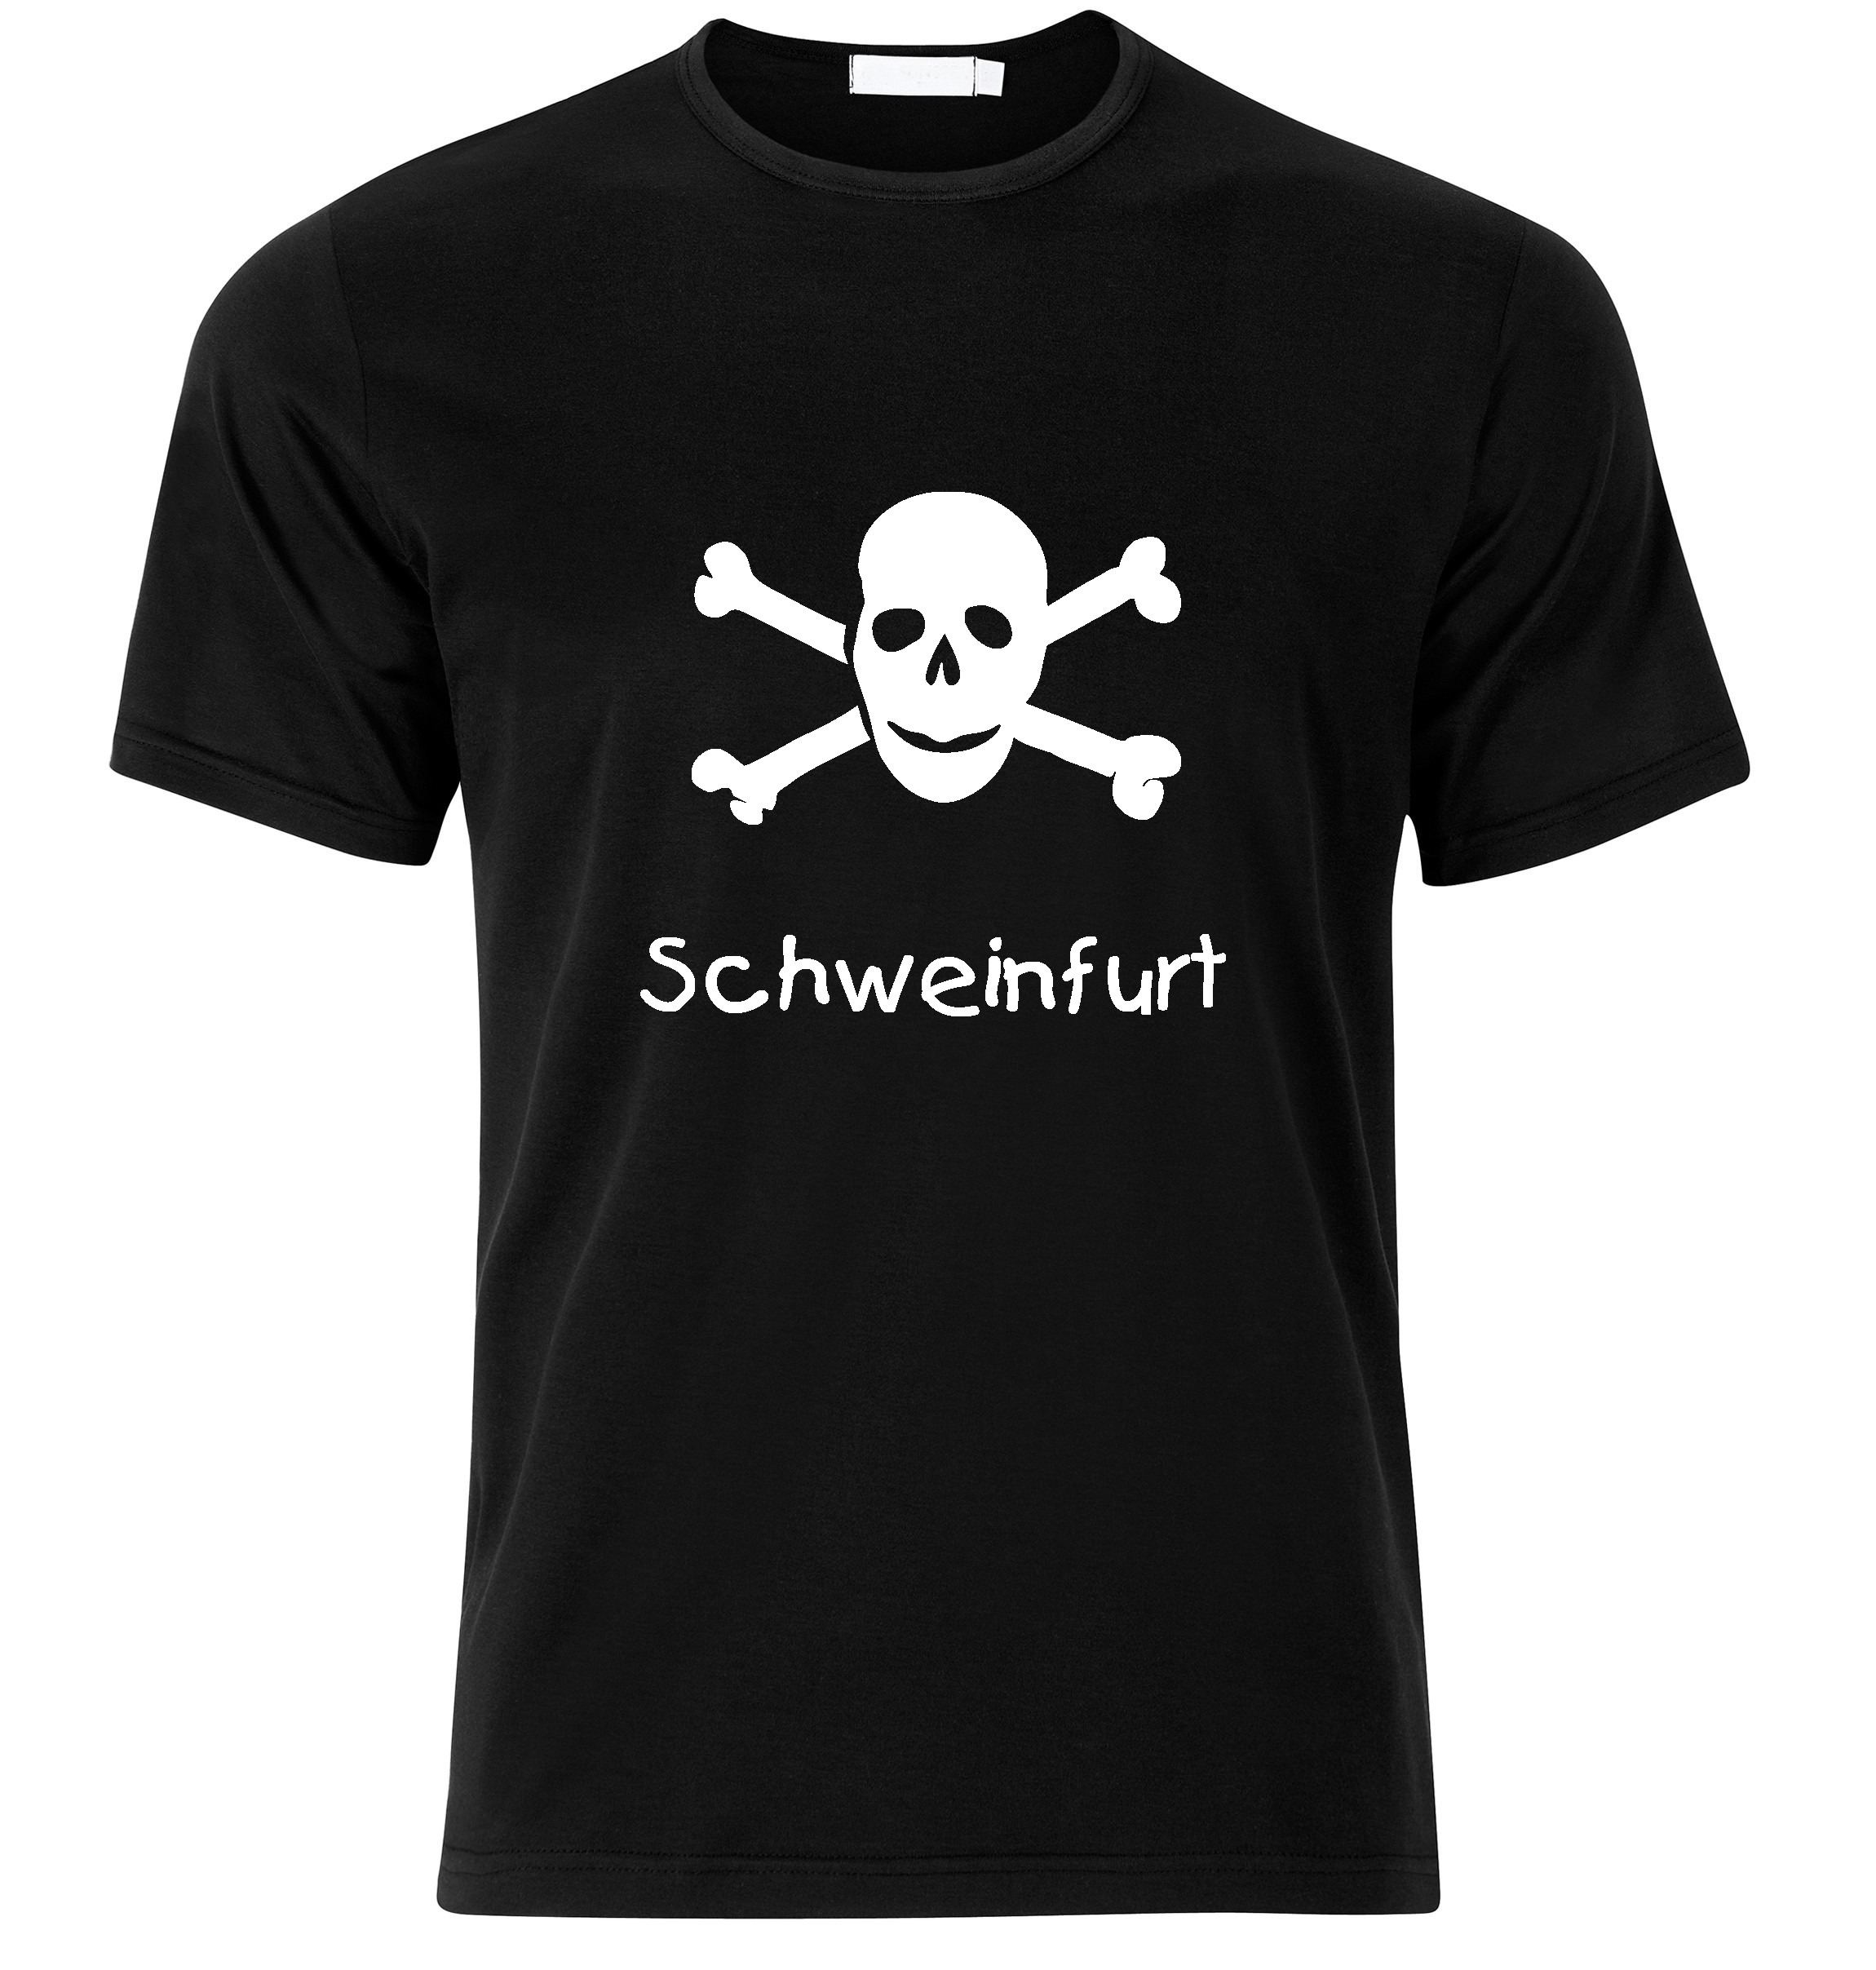 T-Shirt Schweinfurt Jolly Roger, Totenkopf